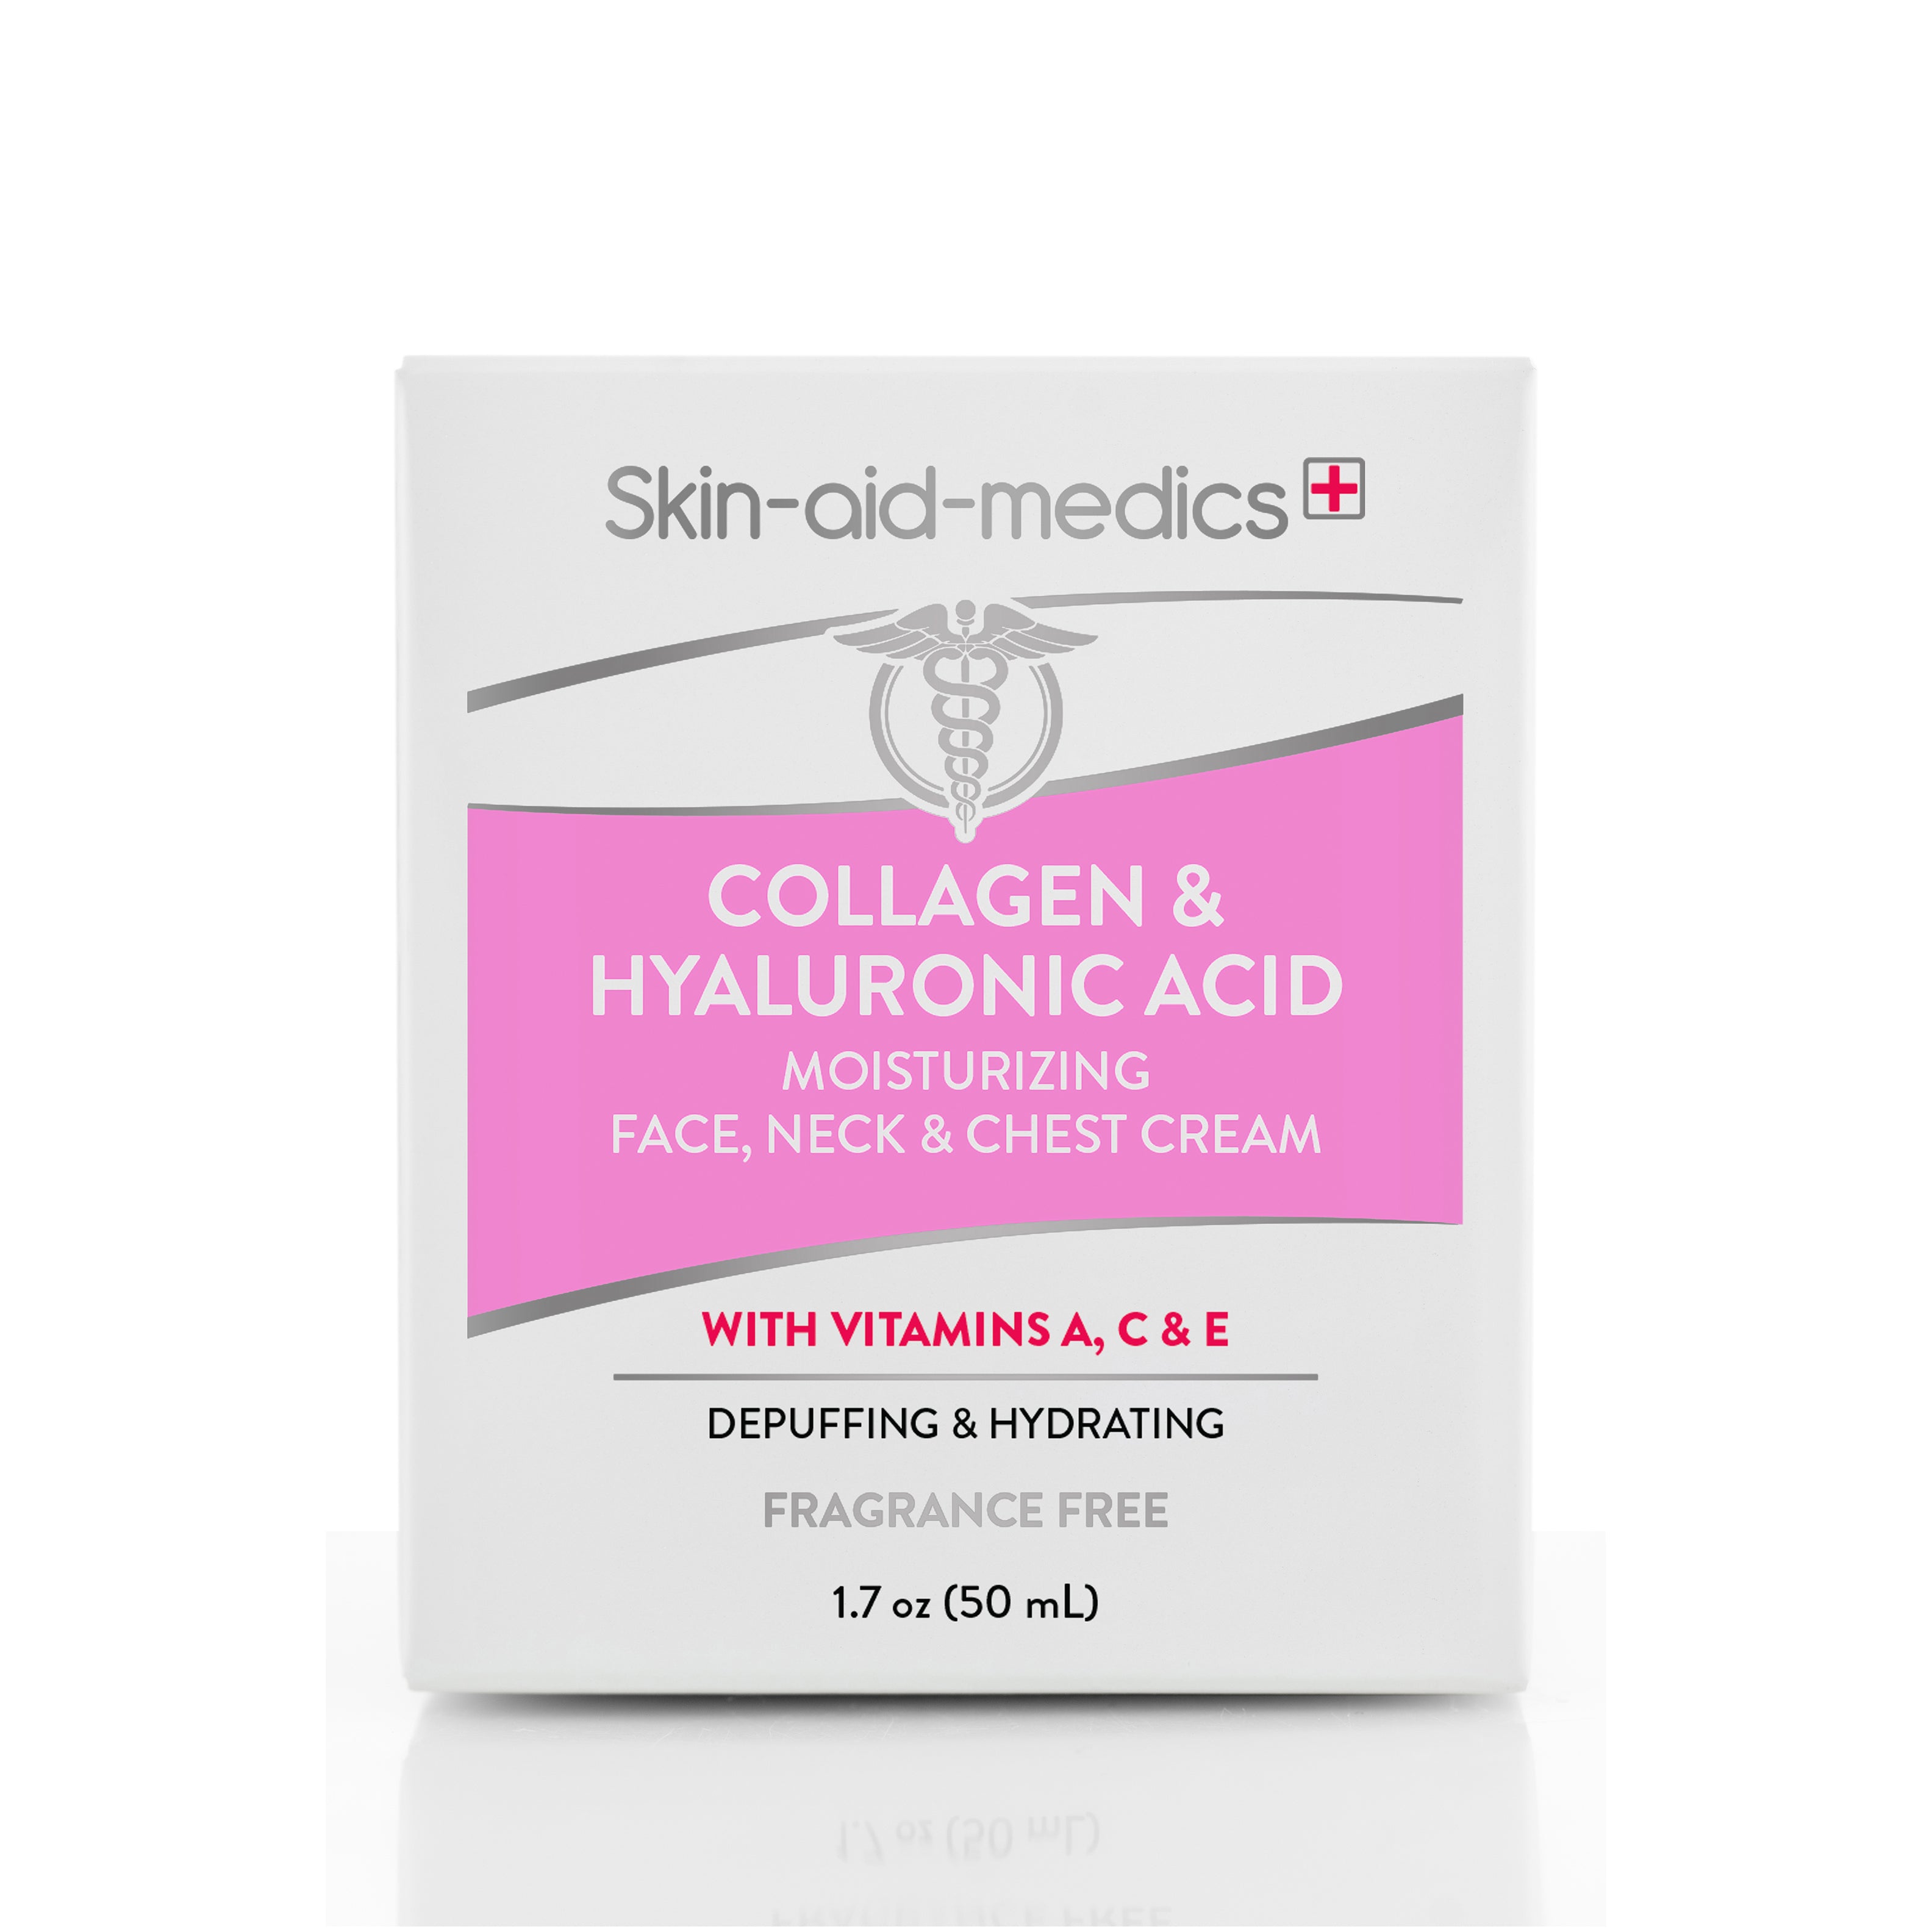 Collagen & Hyaluronic Acid Moisturizing Face, Neck & Chest Cream